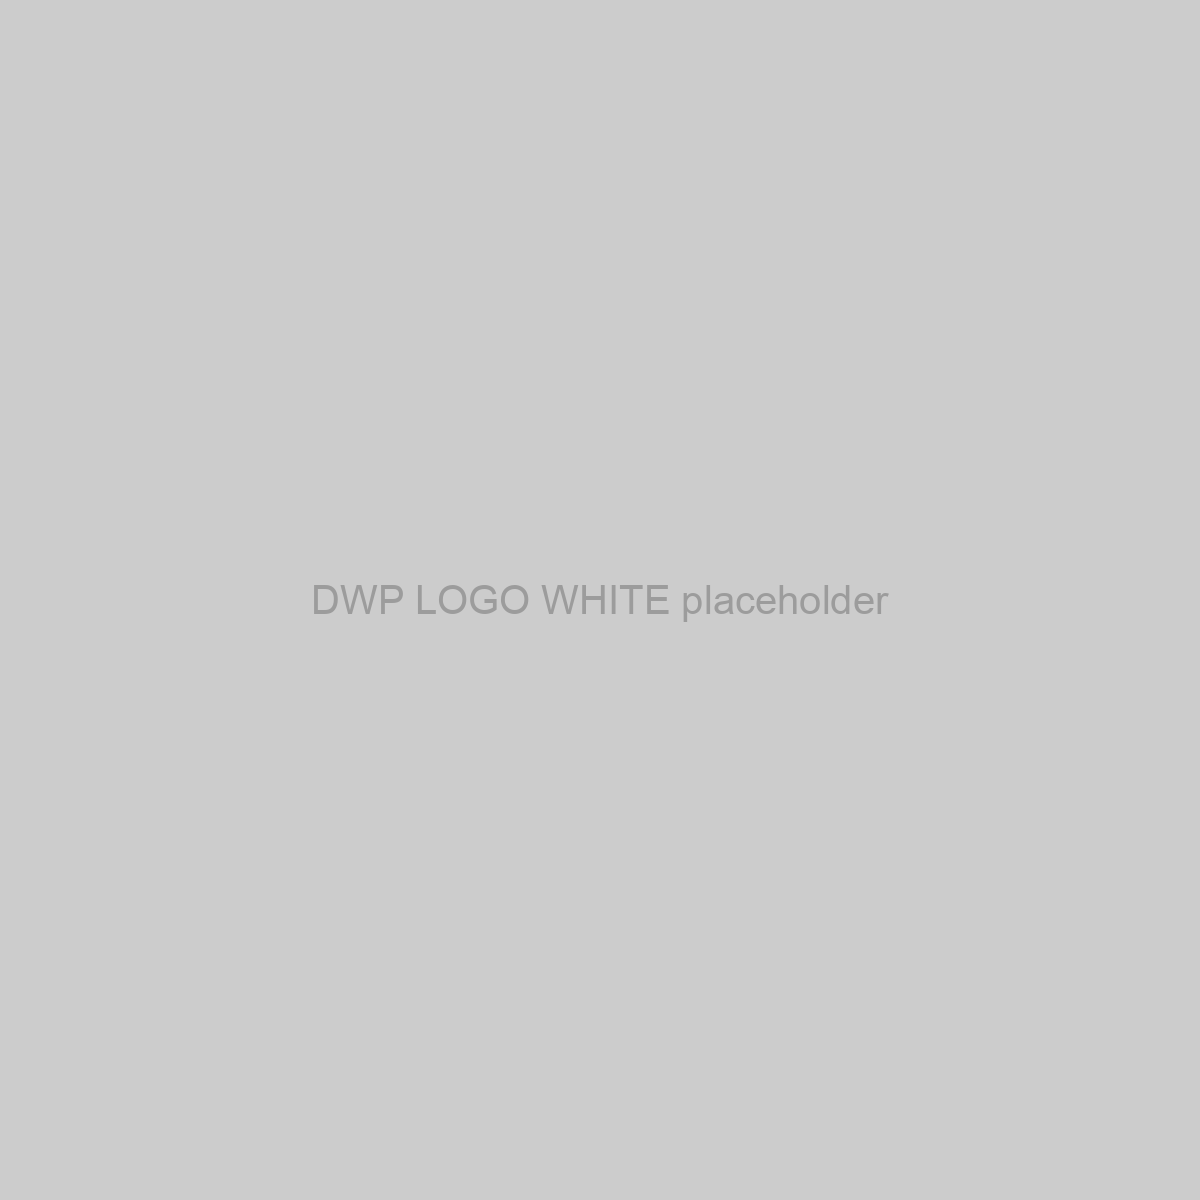 DWP LOGO WHITE Placeholder Image